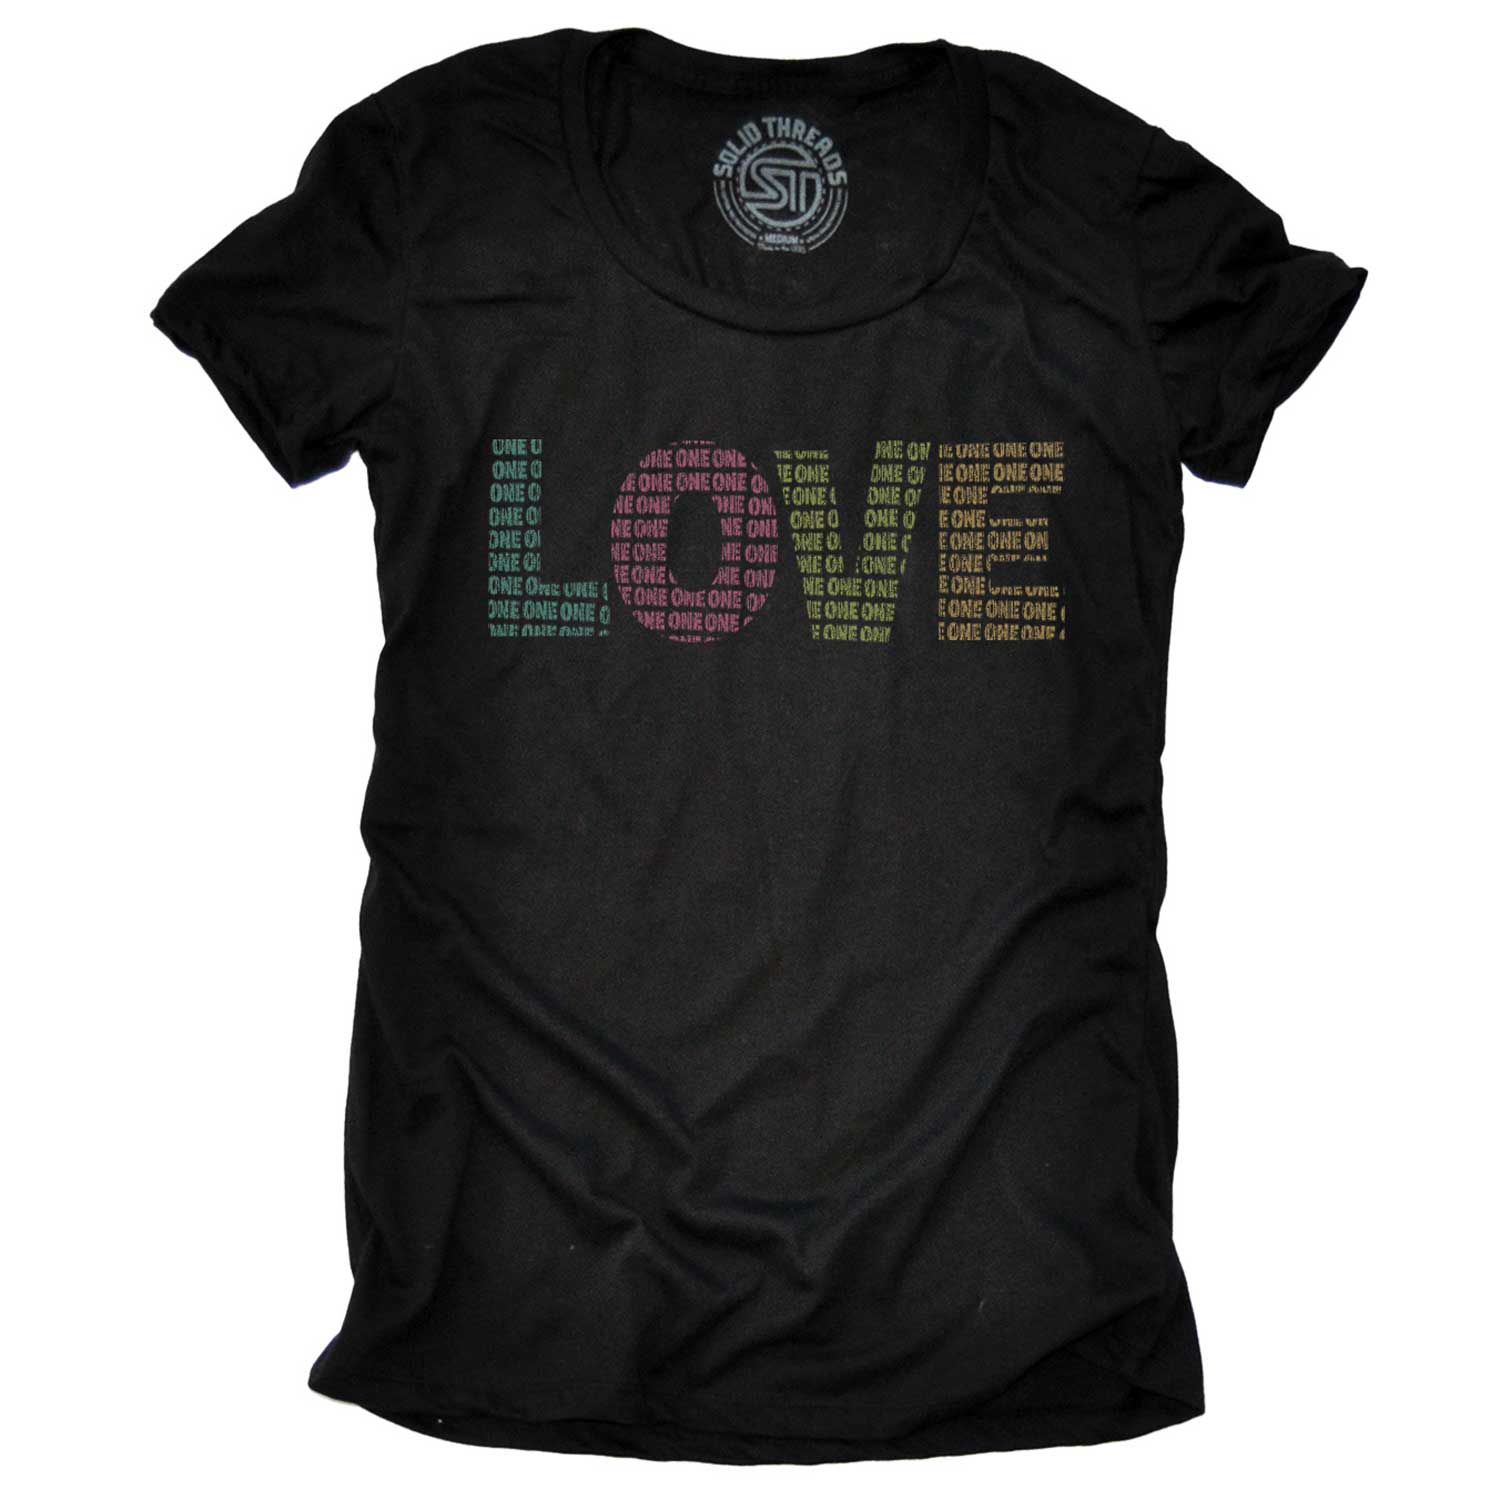 Women's One Bright Love T-shirt